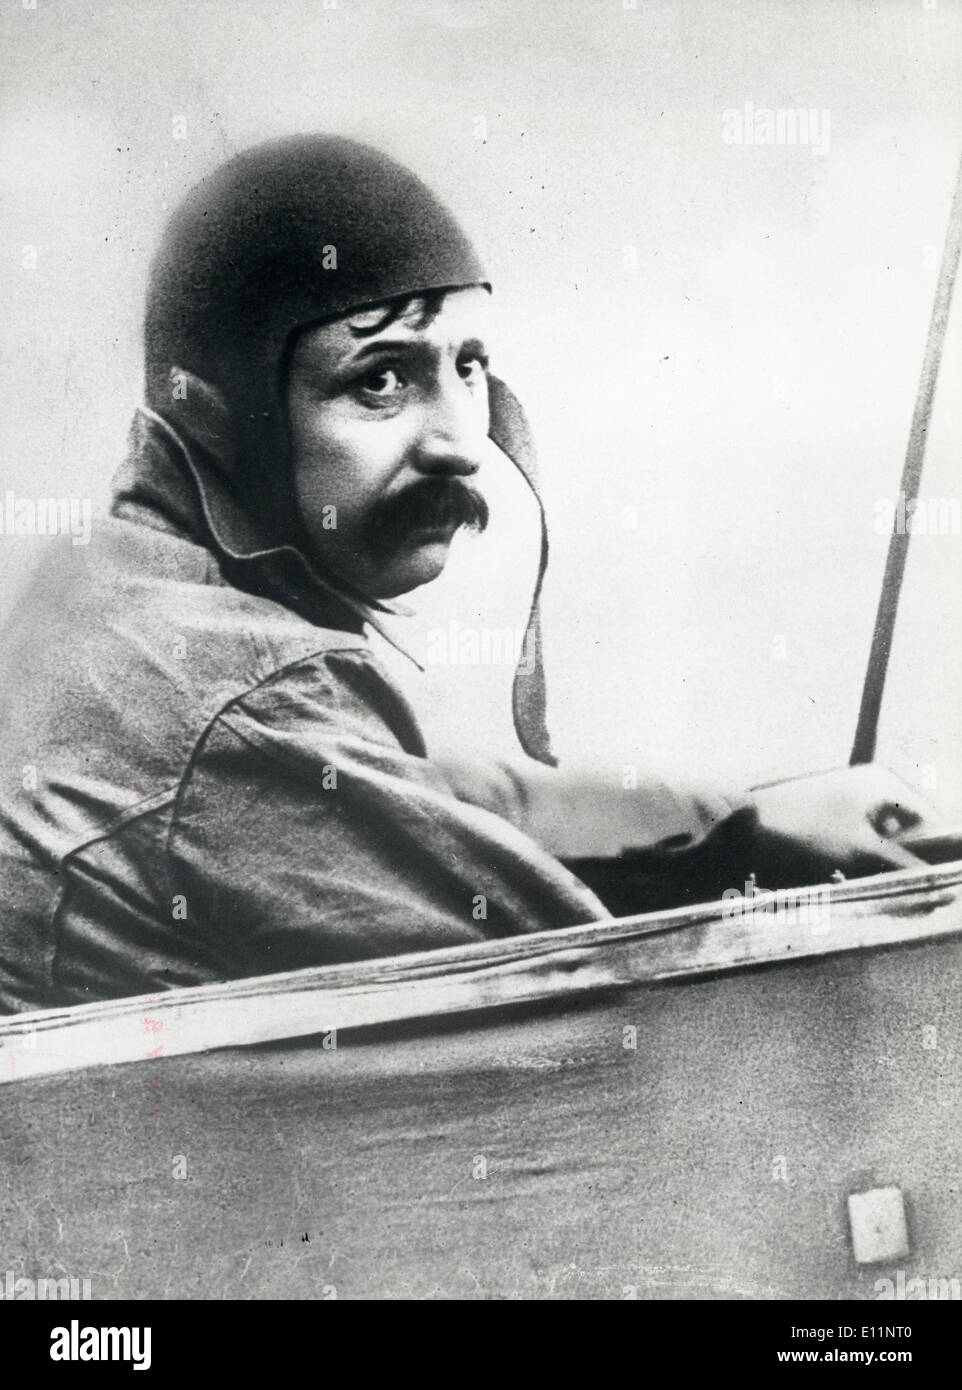 Jul 18, 1979 ; Calais, France ; le 25 juillet 1909, M. Louis Blériot fit son premier voyage sur son avion à travers la Manche. L Banque D'Images